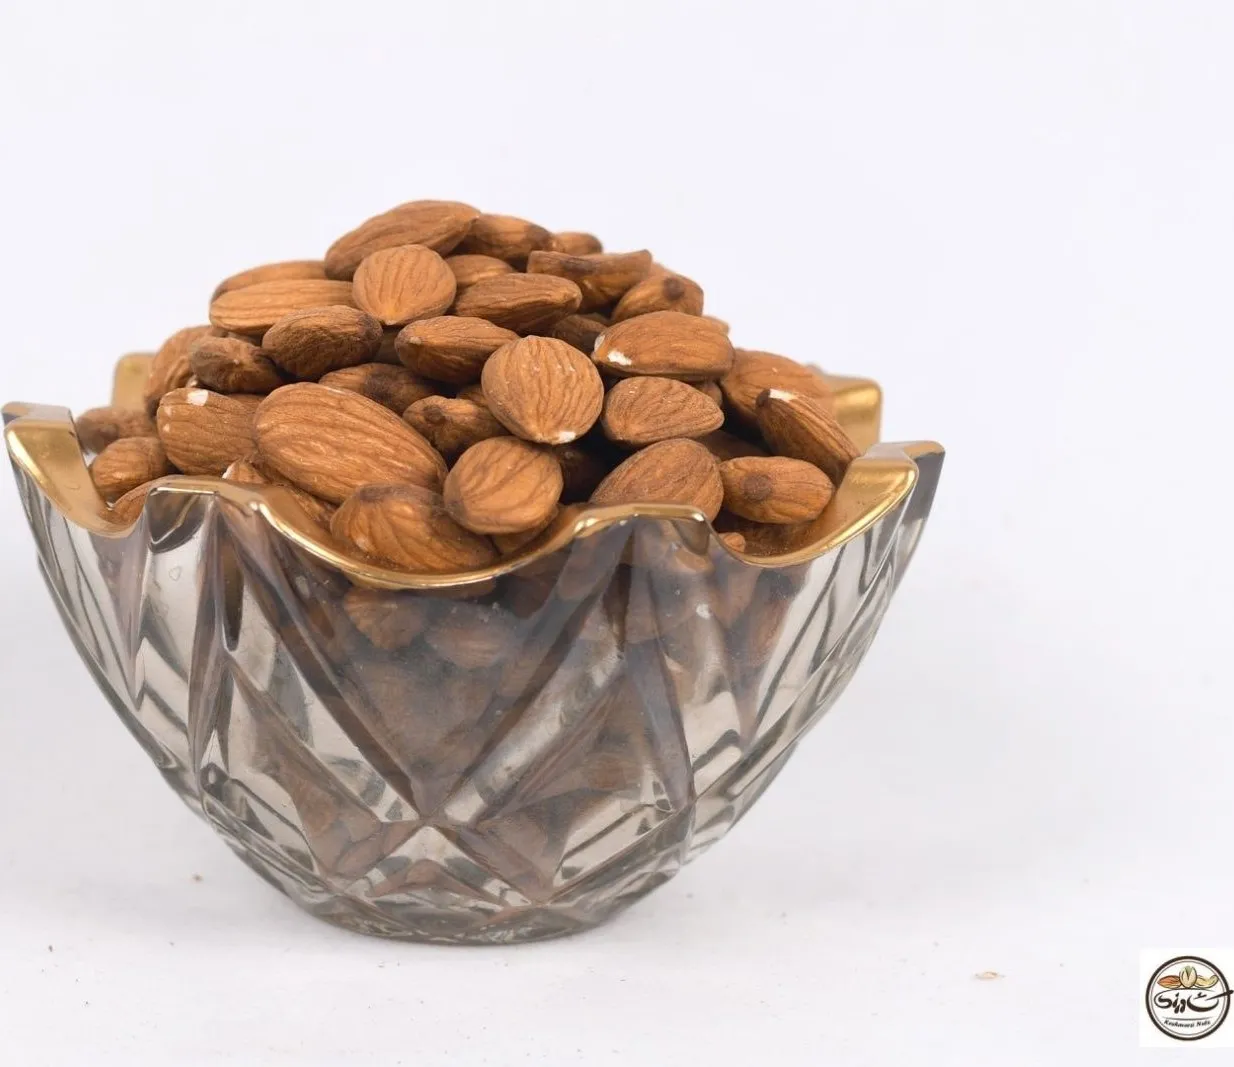 Buy dry roasted nuts ingredients + best price